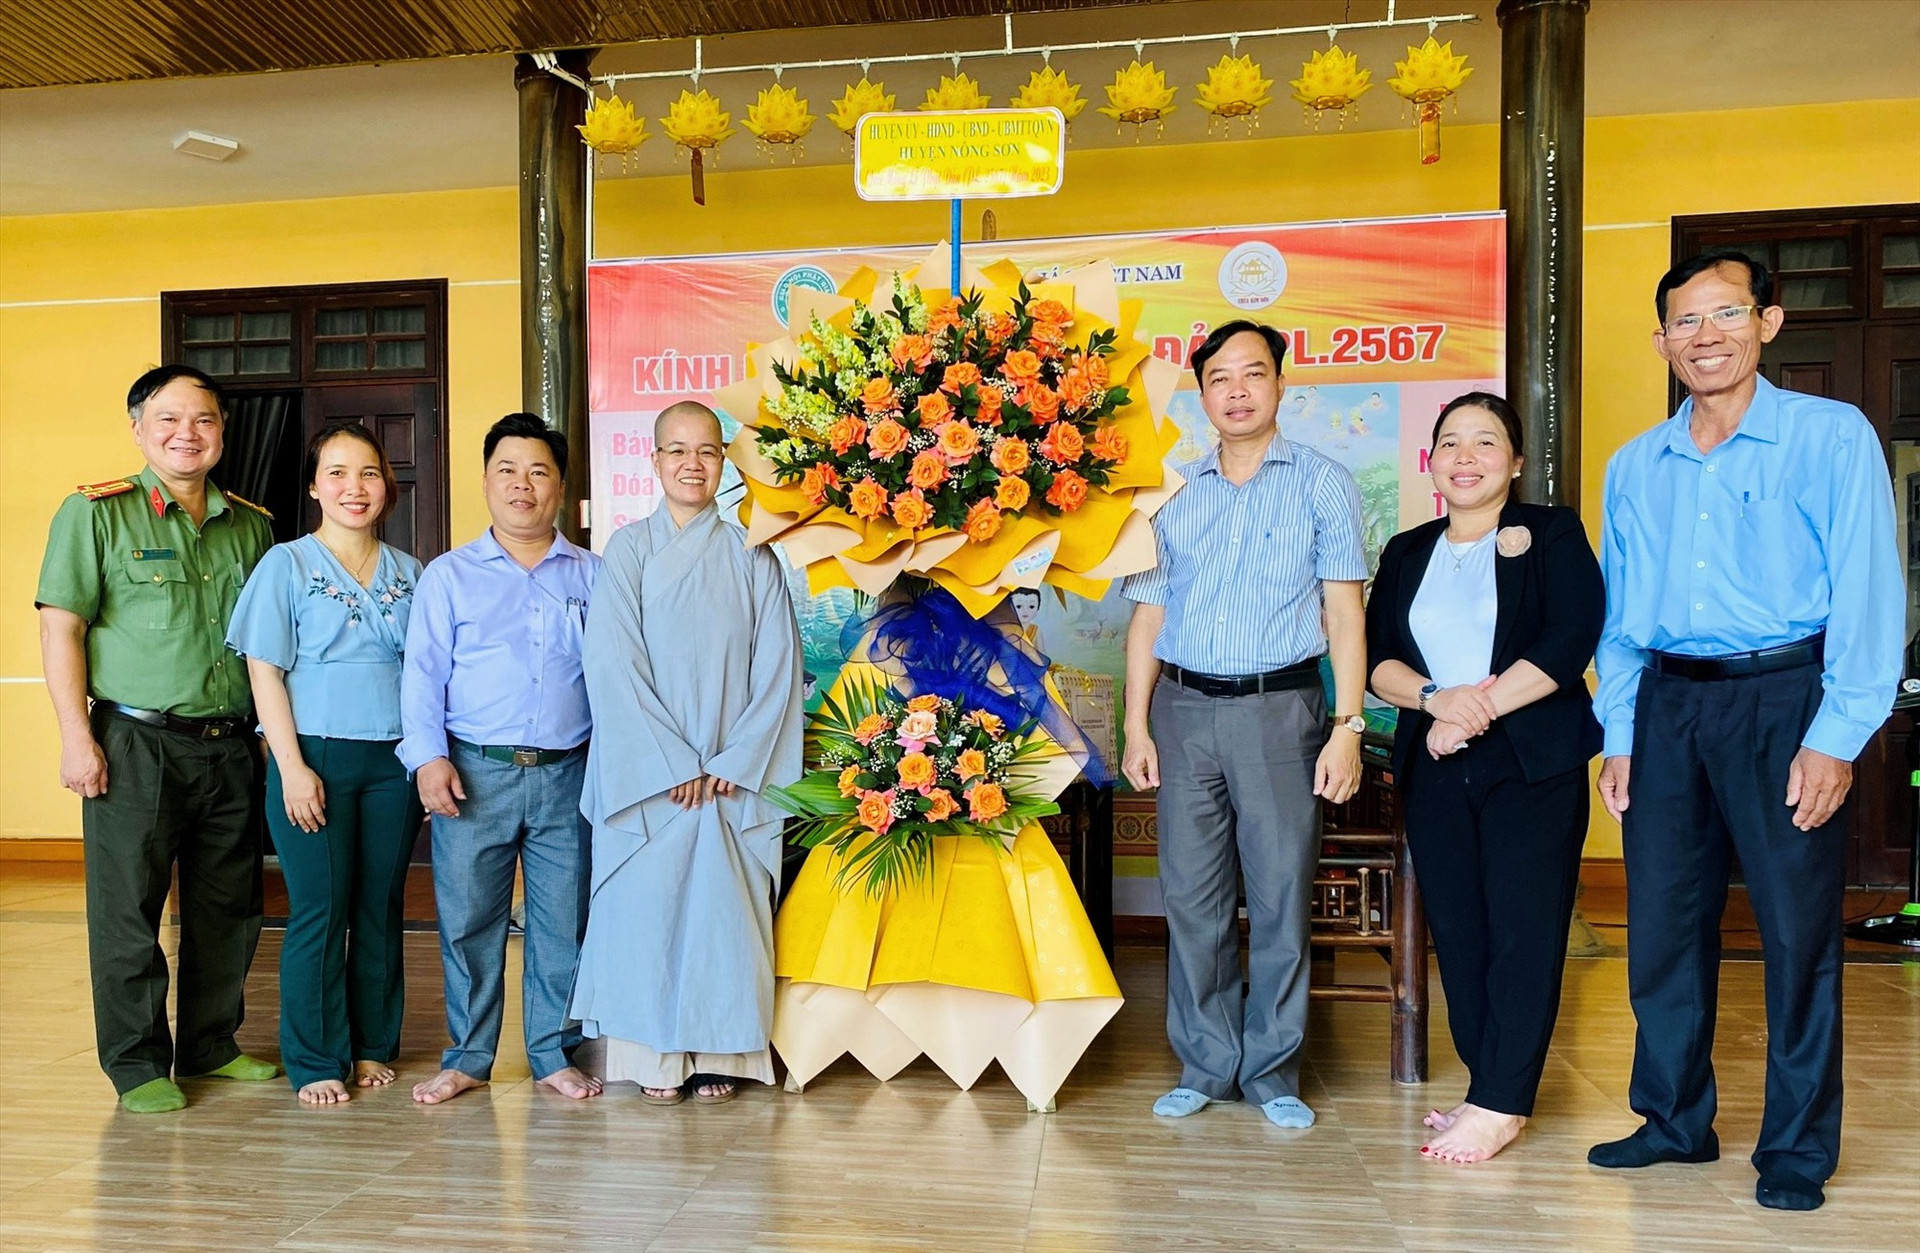 Lãnh đạo huyện Nông Sơn thăm và chúc mừng Đại lễ Phật đản năm 2023 tại chùa Kim Sơn (thị trấn Trung Phước, Nông Sơn). Ảnh: Minh Tâm